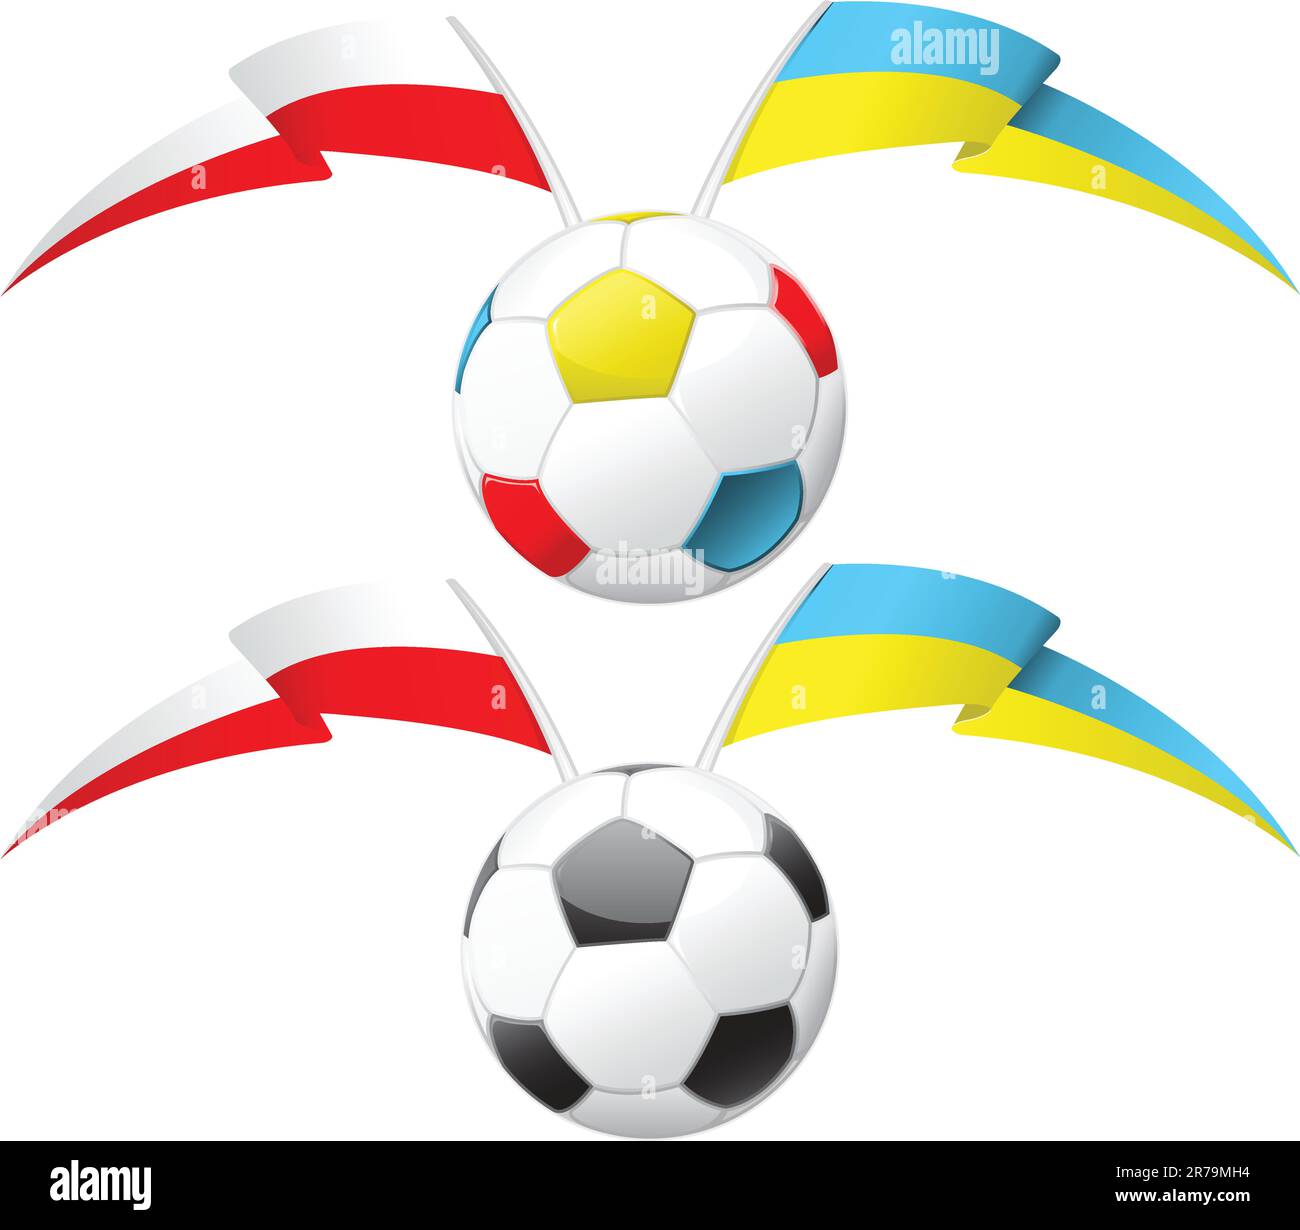 Ballon de football avec drapeaux polonais et ukrainien Illustration de Vecteur